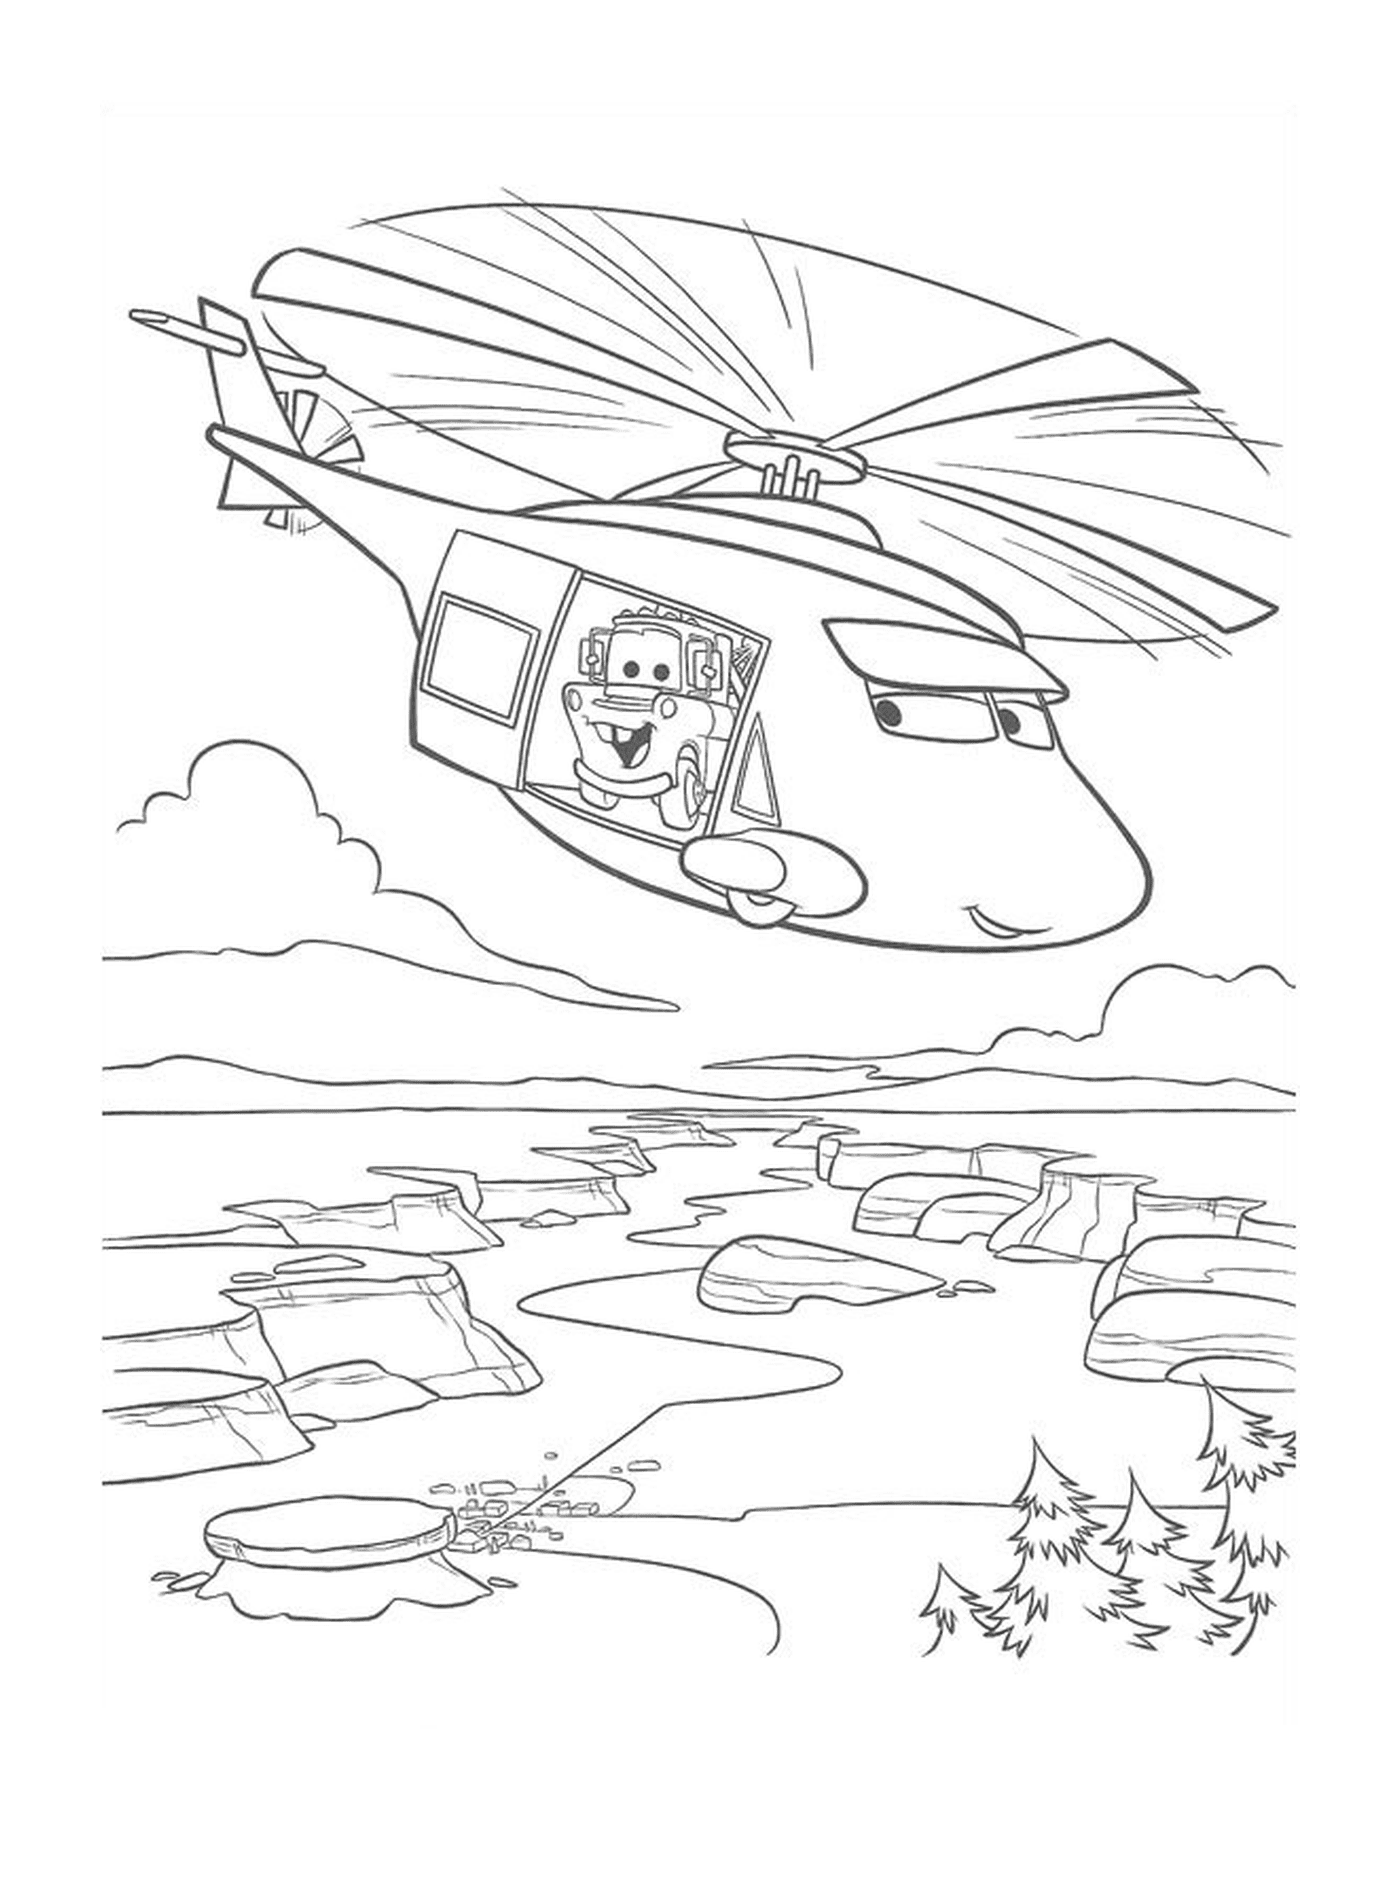  Torre de helicóptero com Flash McQueen 